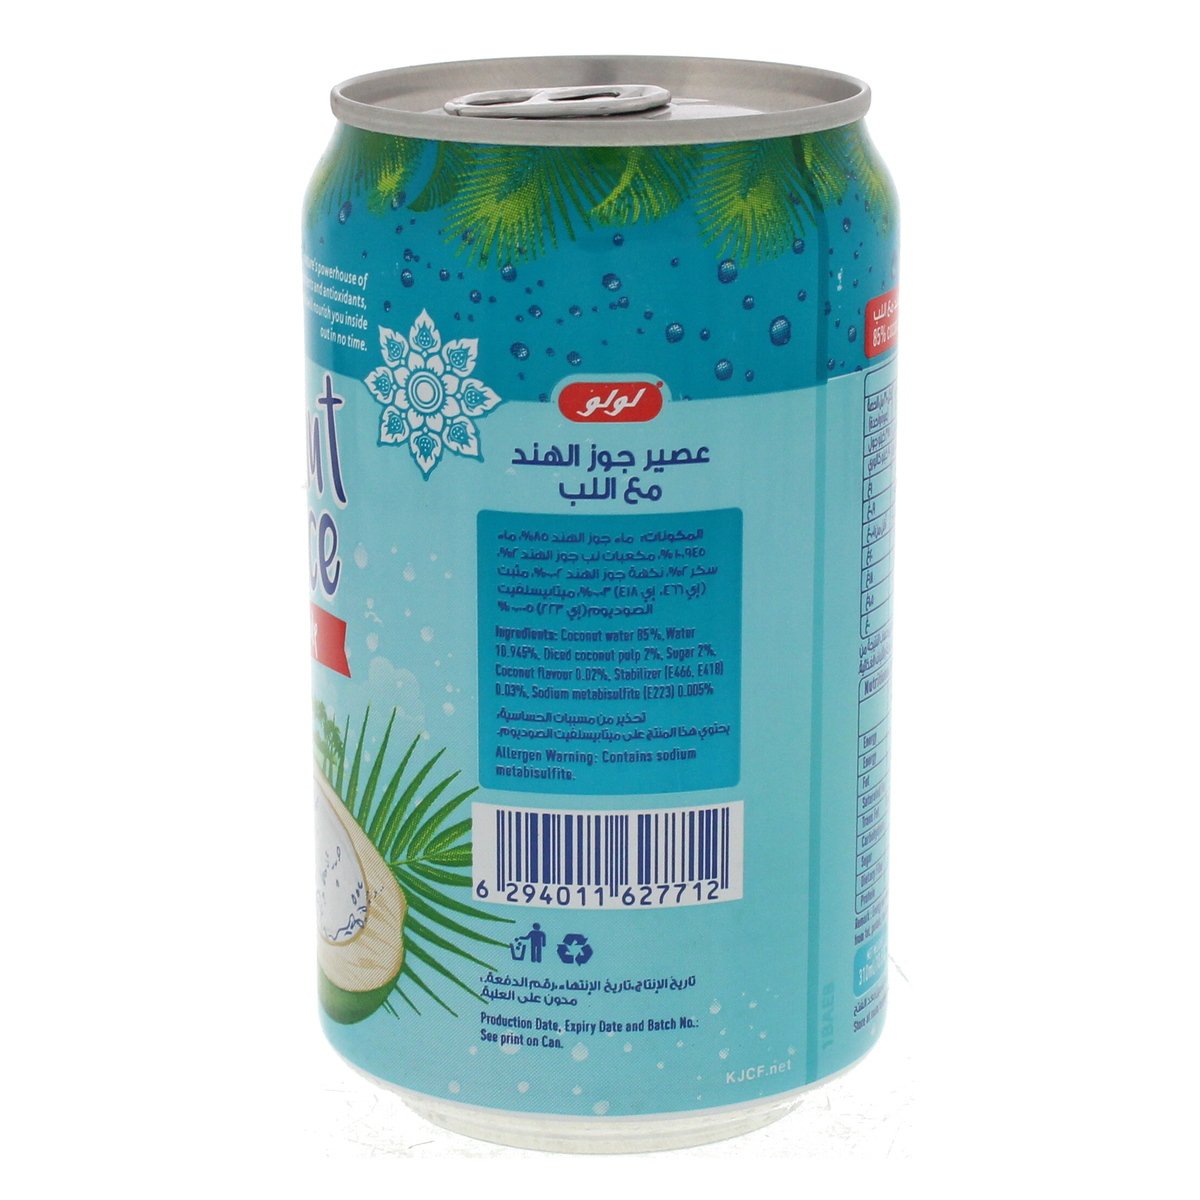 LuLu Coconut Juice with Pulp 310 ml